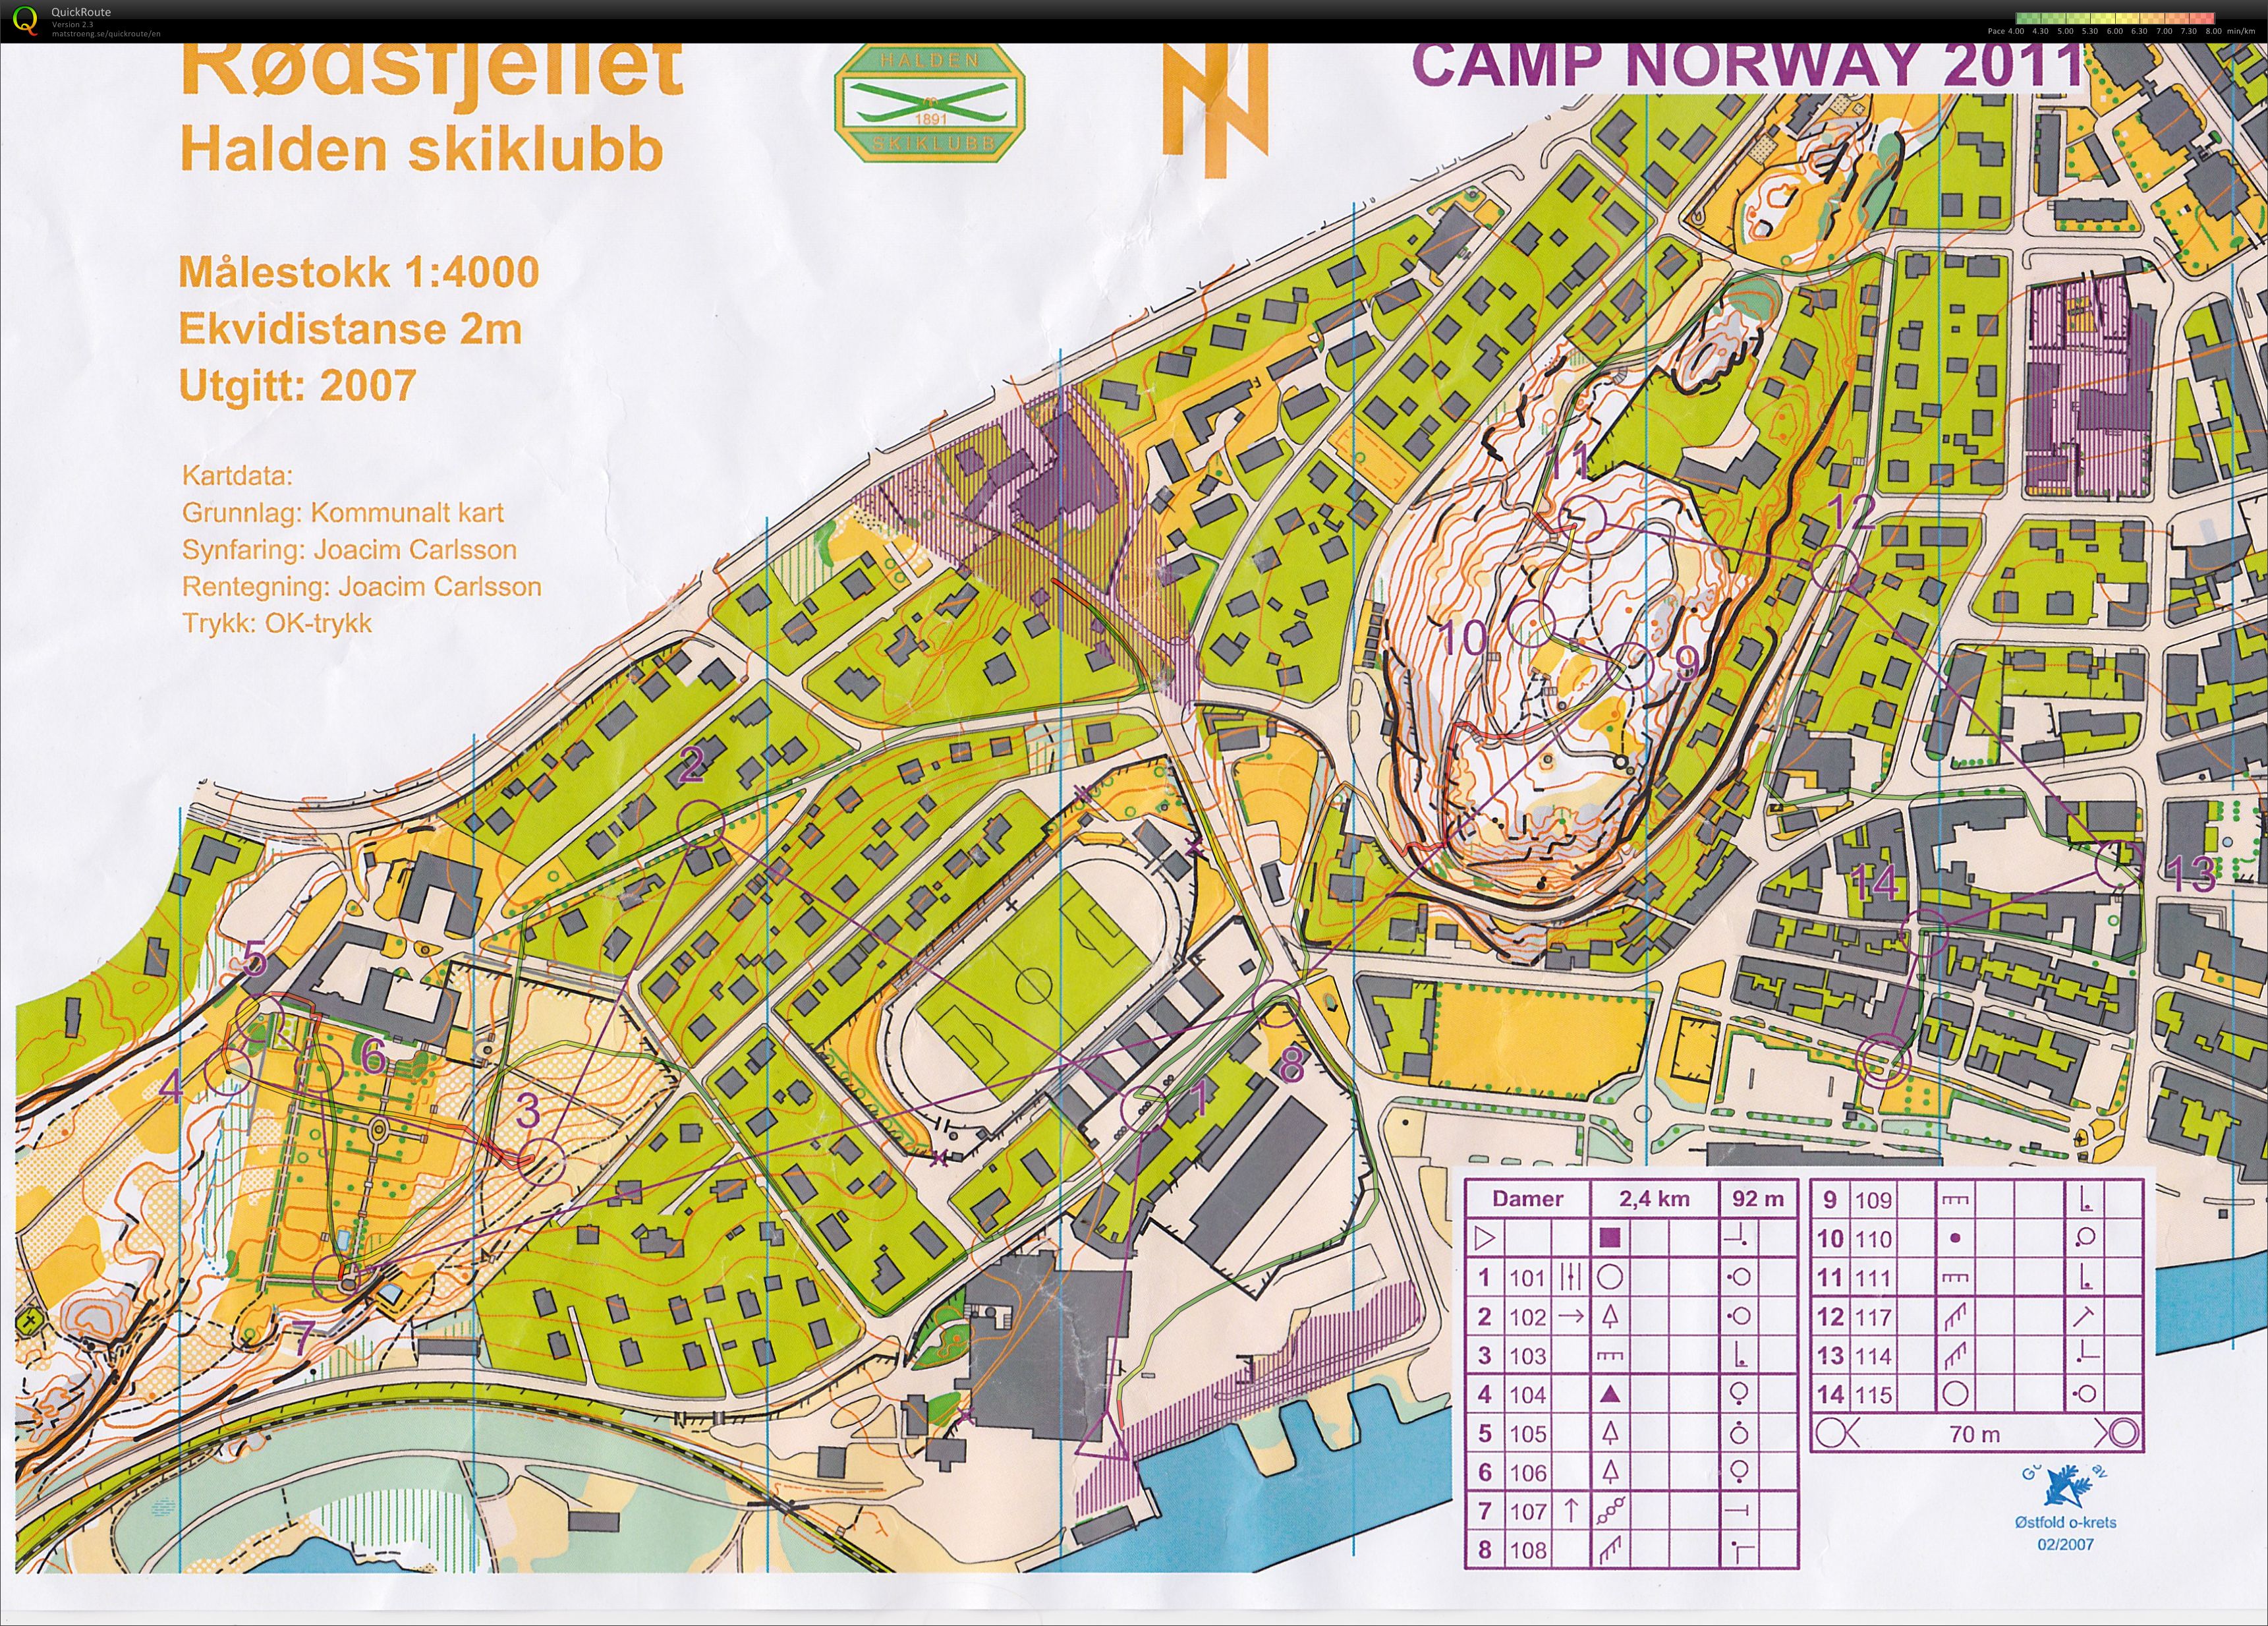 Camp Norway Halden økt 1, sprint (03/11/2011)